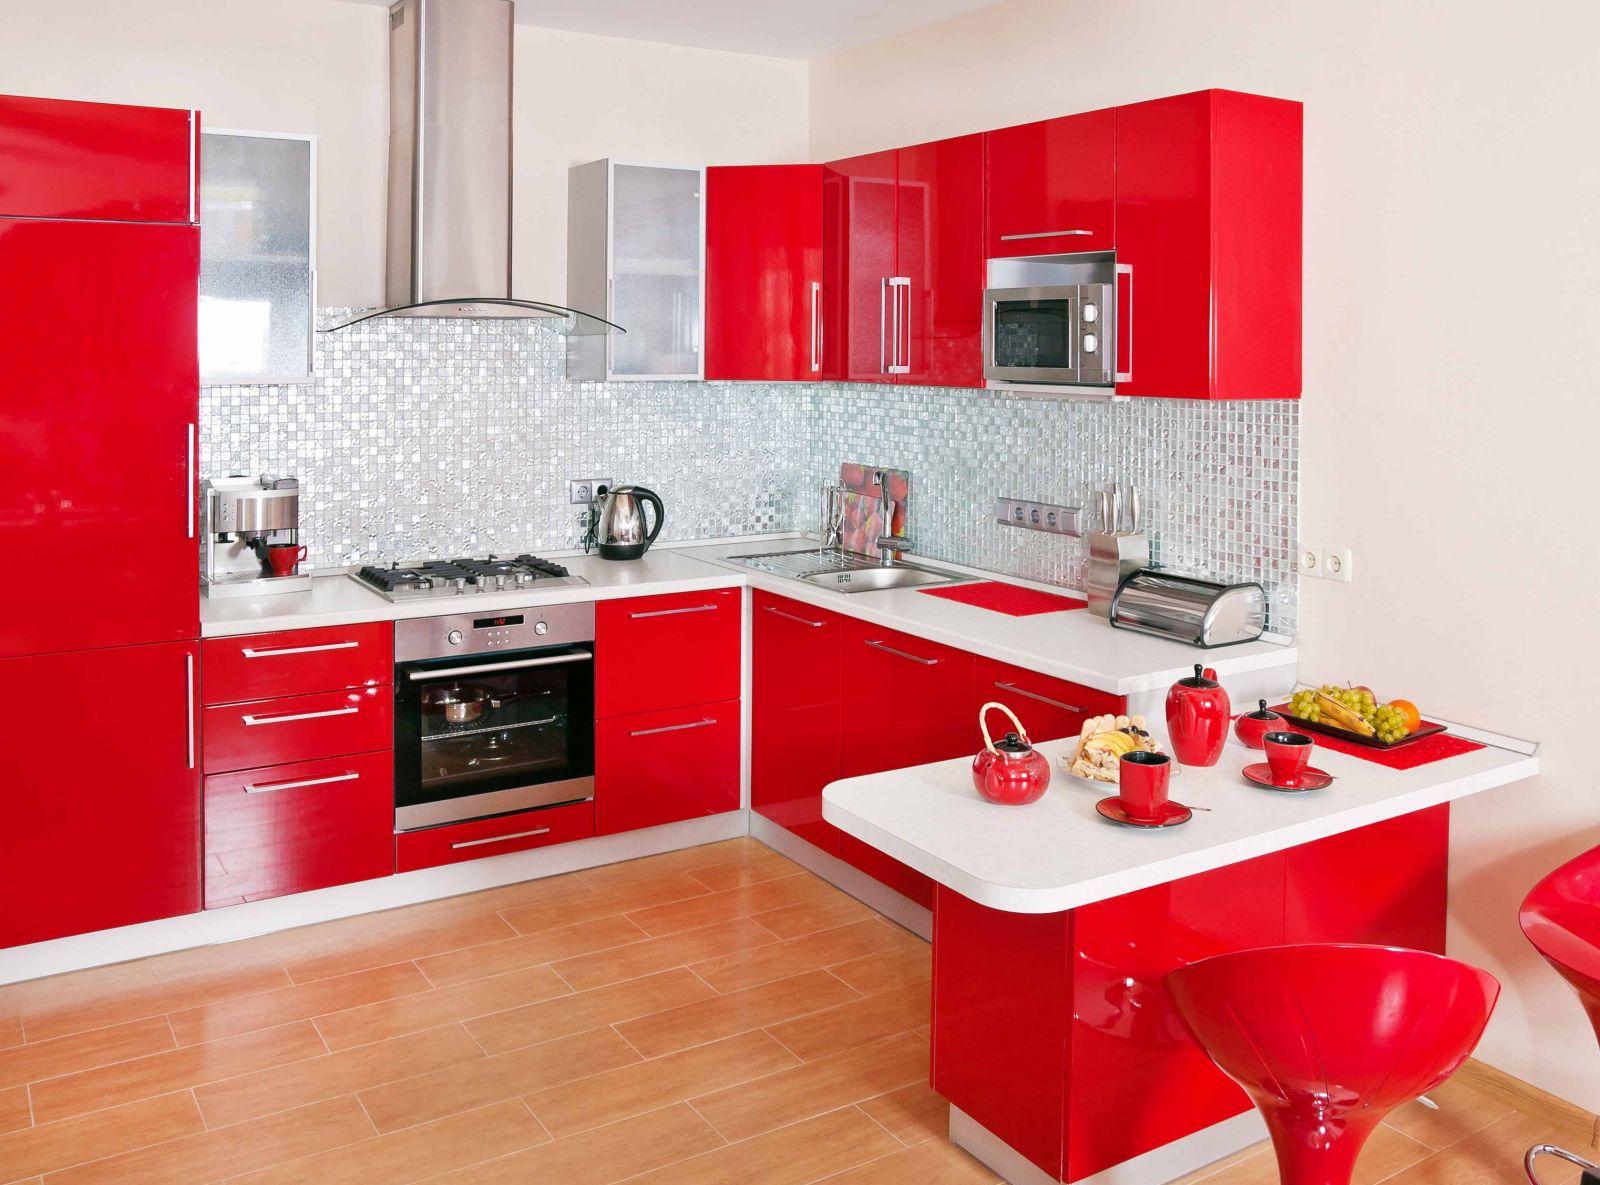 Холодильник на красно-белой кухне с обеденной зоной